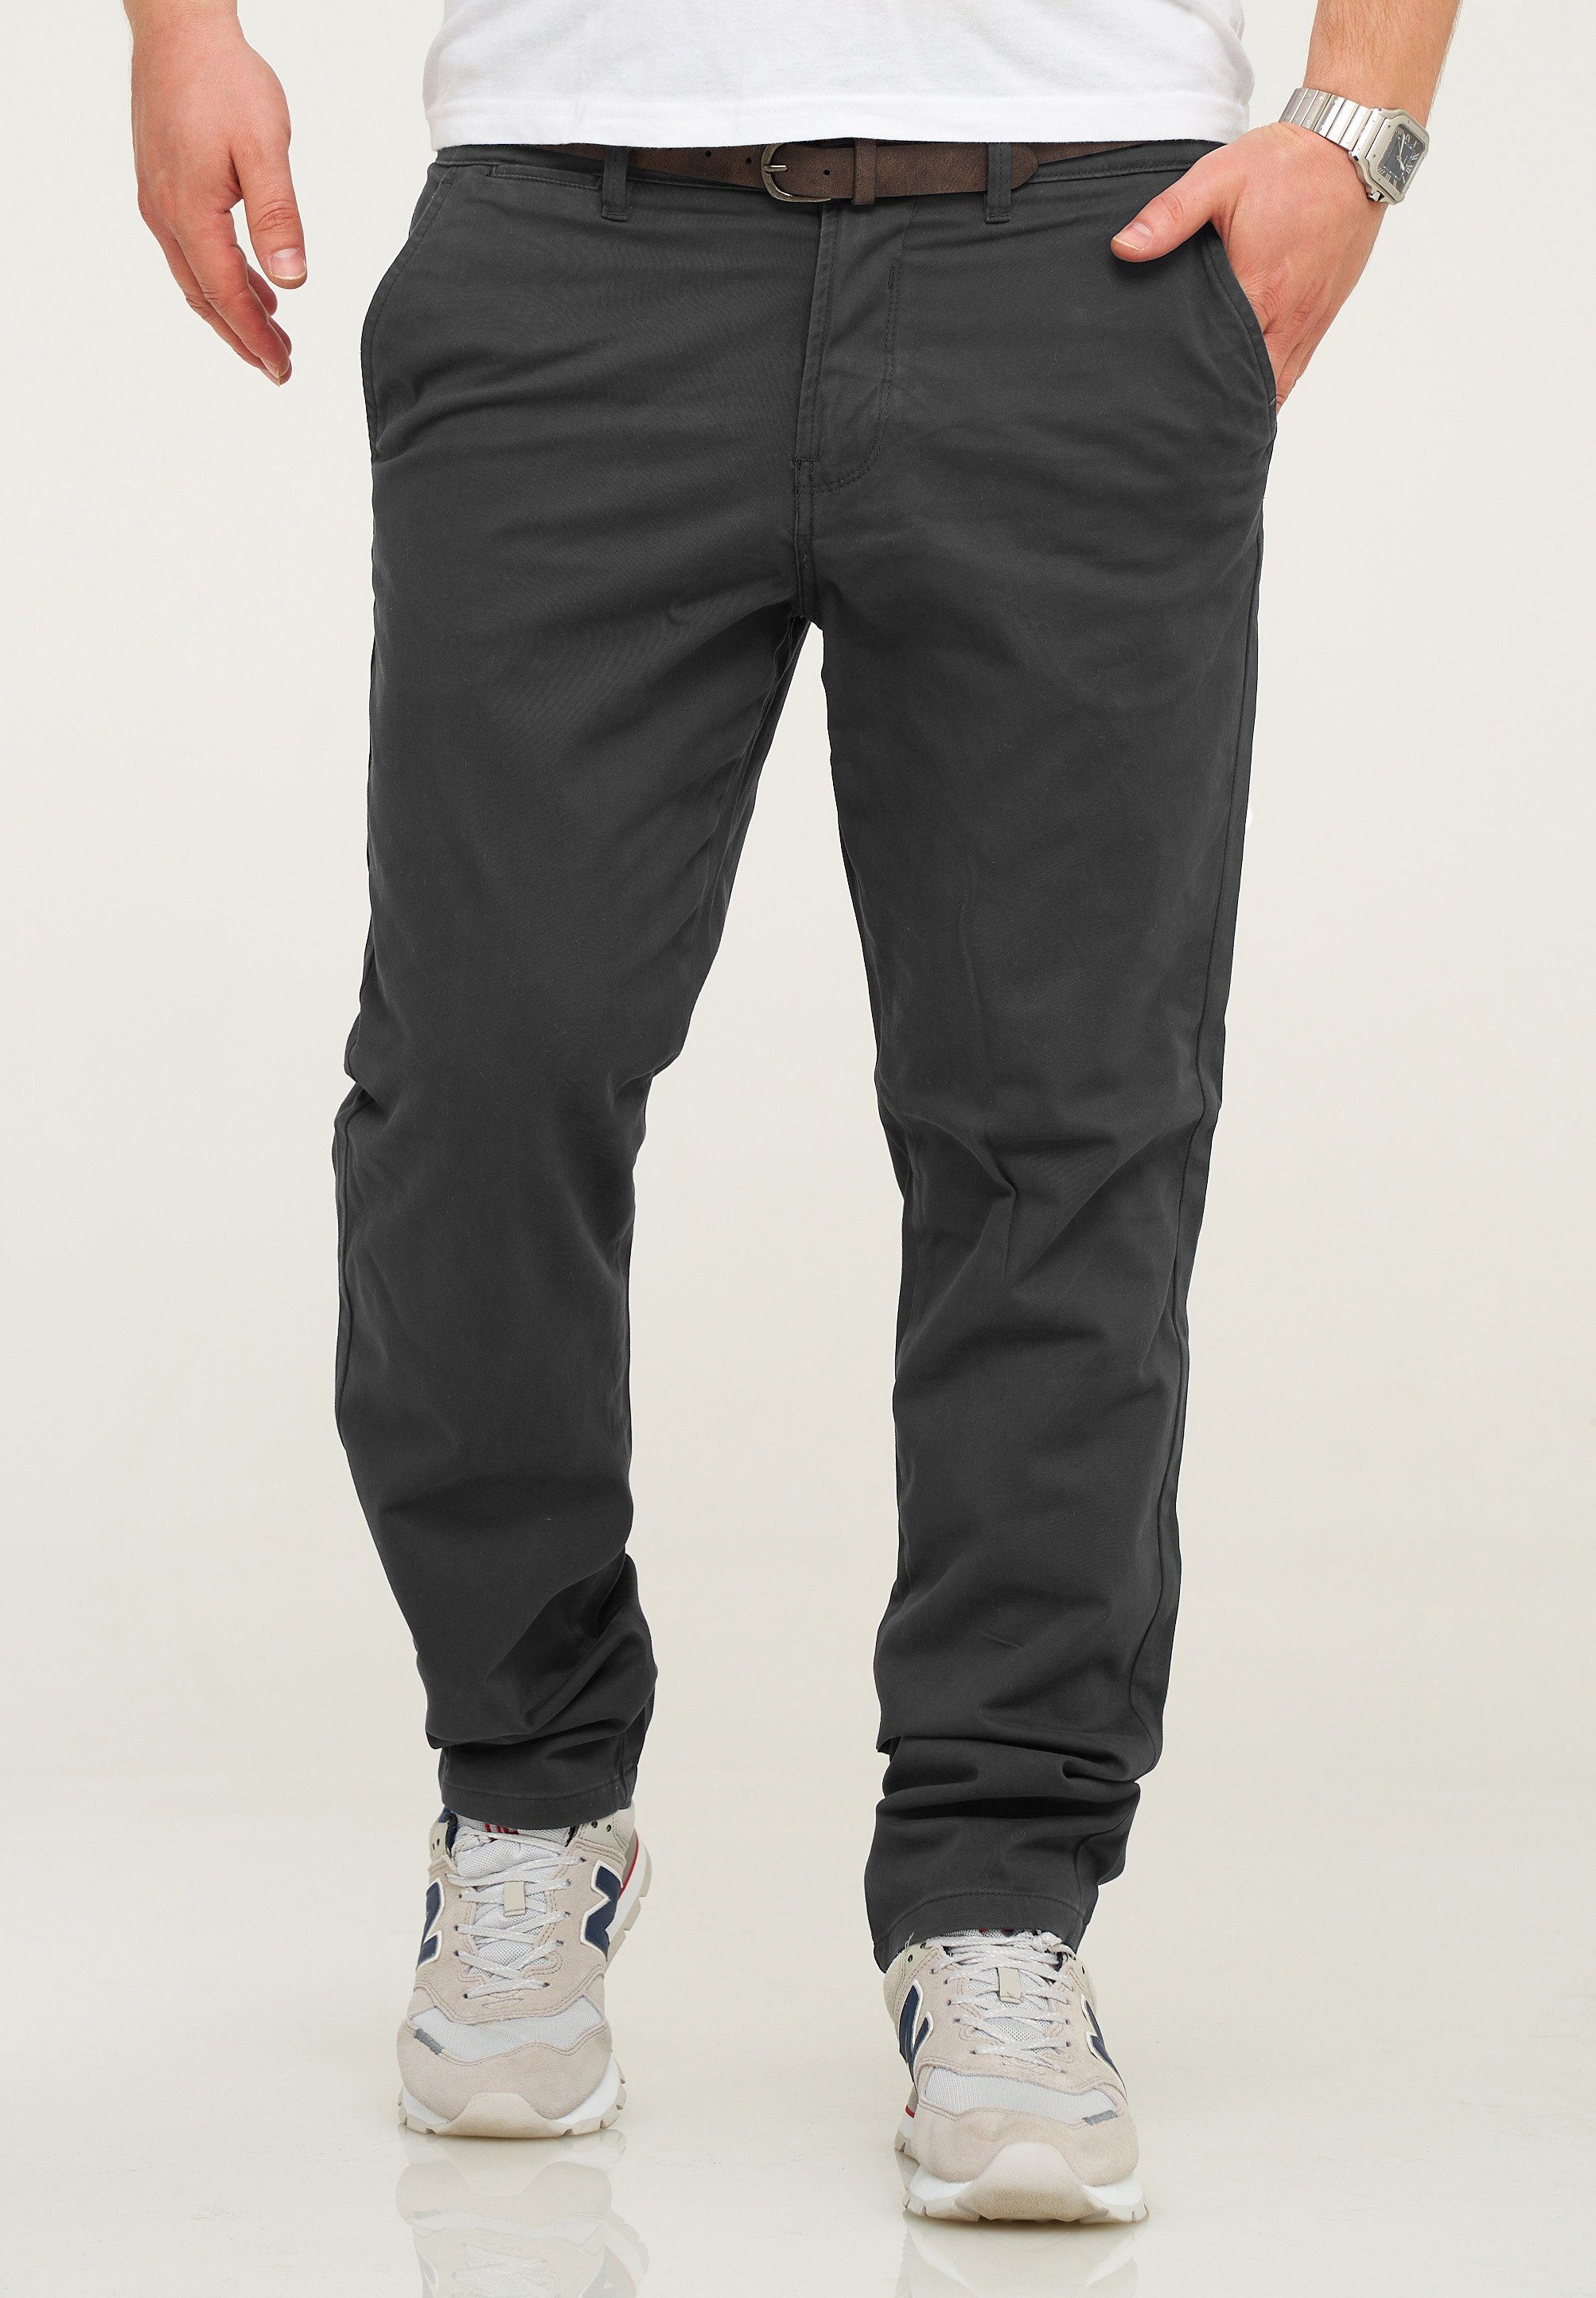 Jack & Jones Chinohose JJCS mit Gürtel Stretch Jeans-Hose Casual Freizeithose Dark Grey | Stretchhosen